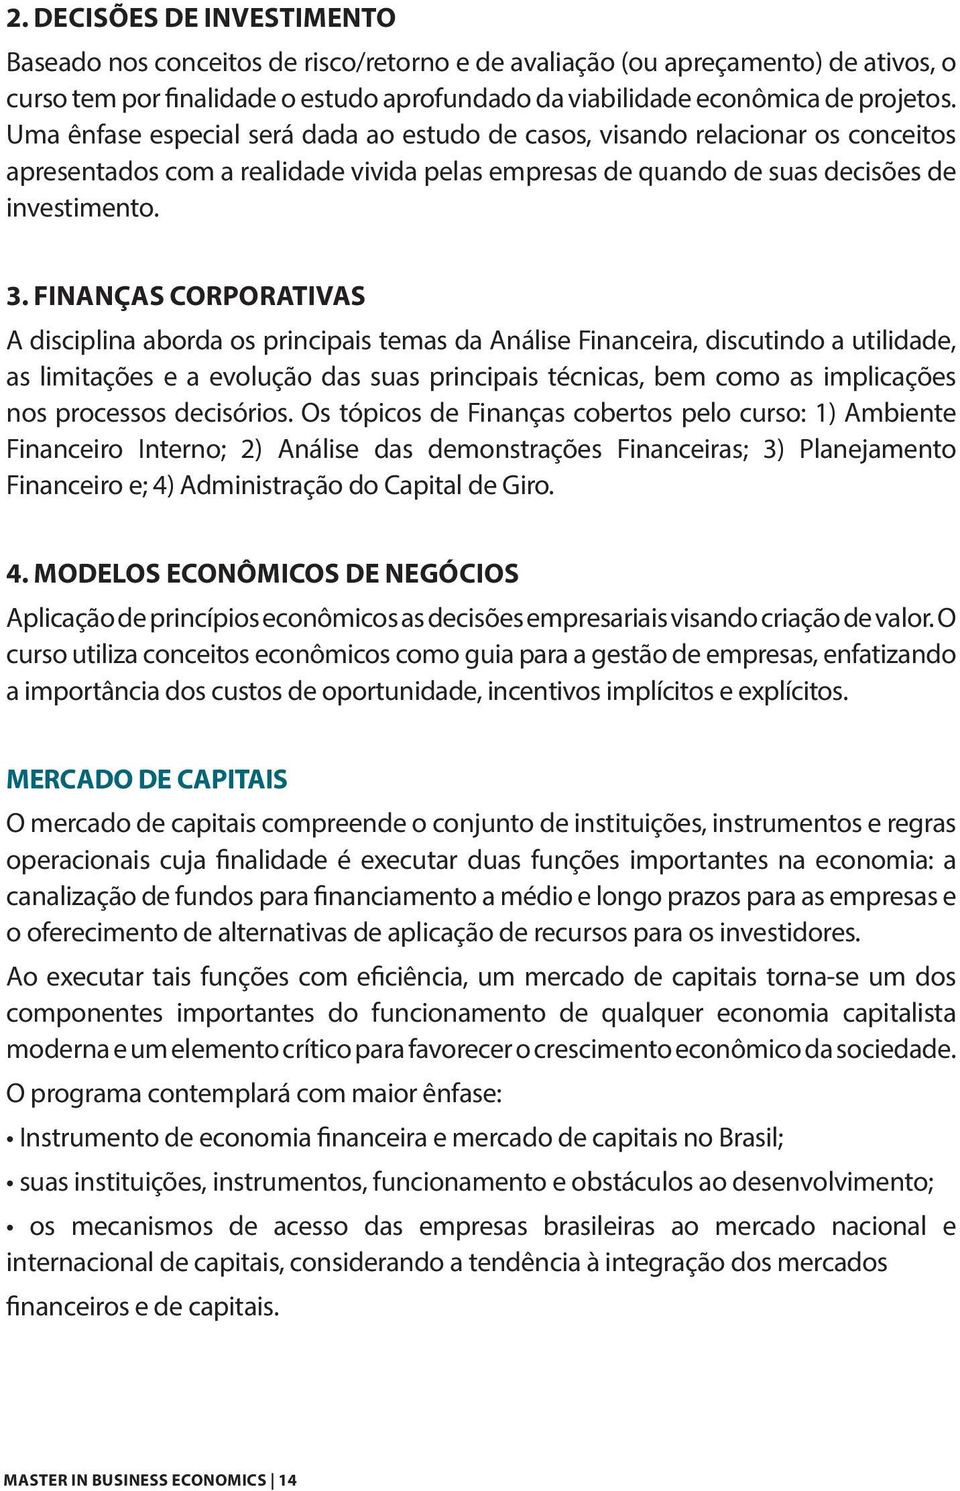 Finanças Corporativas A disciplina aborda os principais temas da Análise Financeira, discutindo a utilidade, as limitações e a evolução das suas principais técnicas, bem como as implicações nos